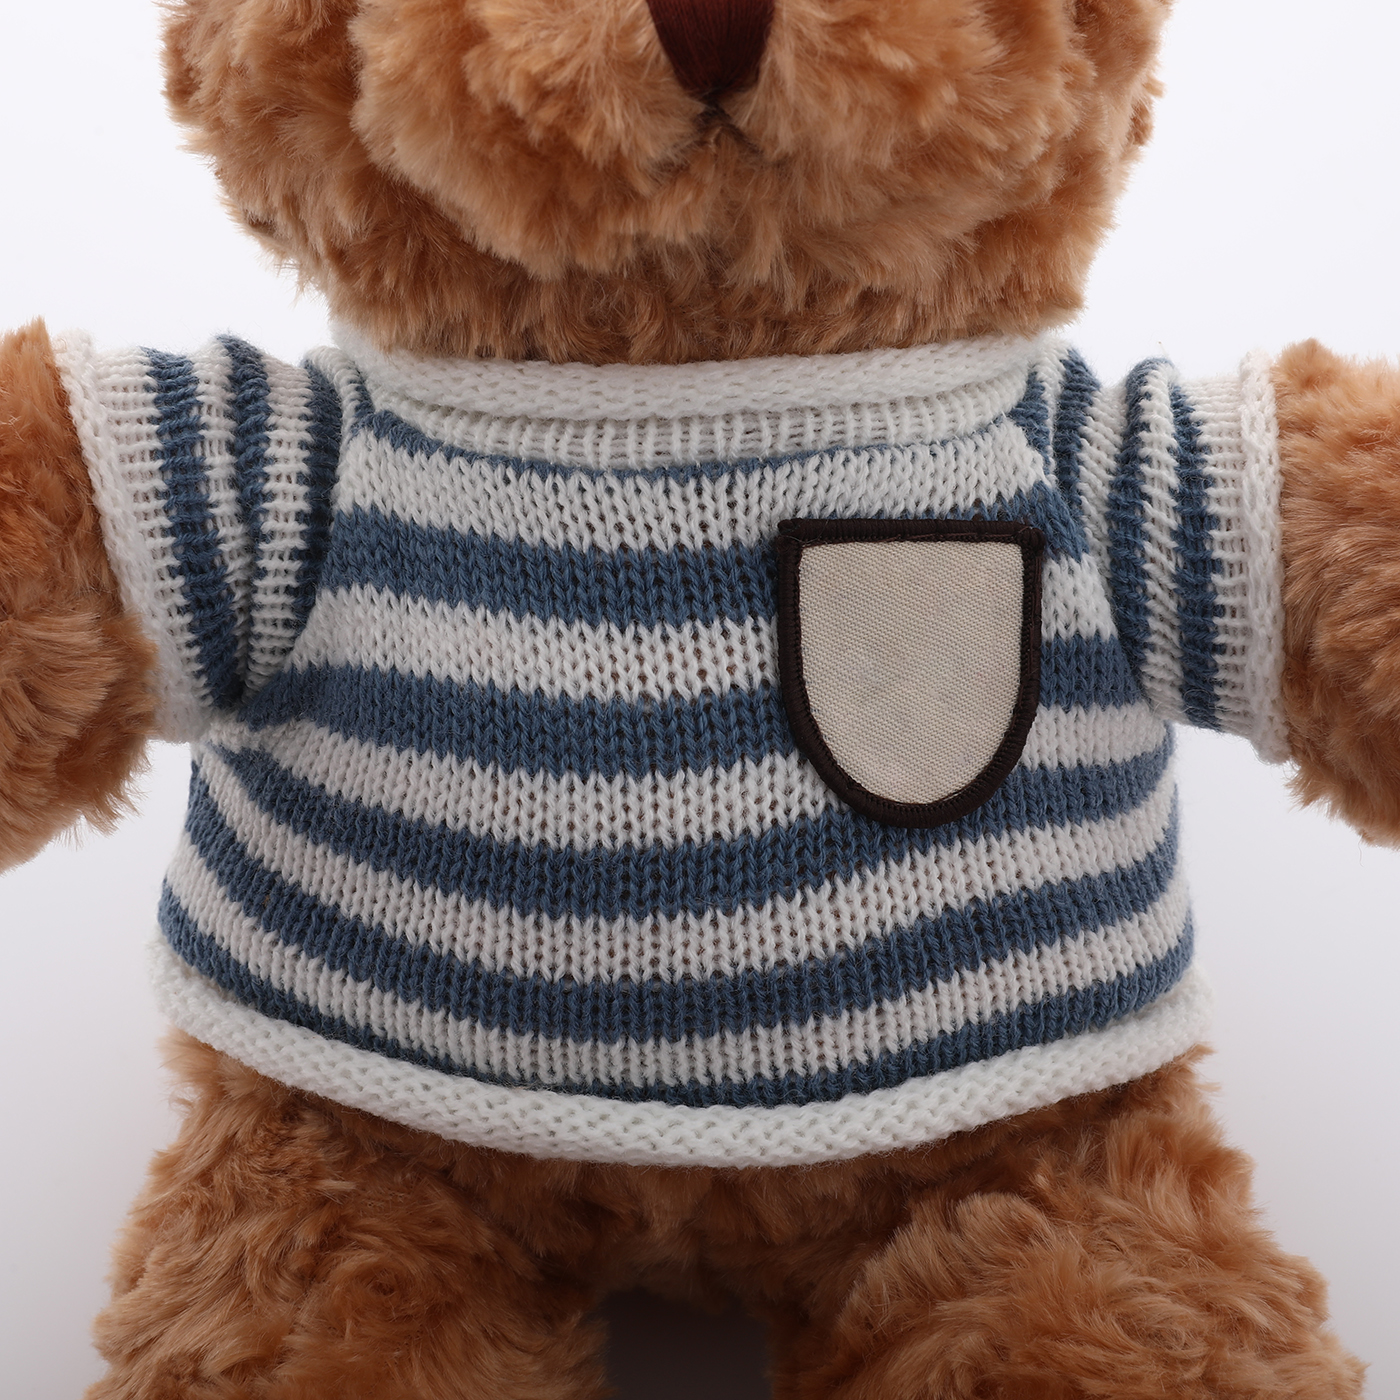 Small Teddy Bear Plush Toy2